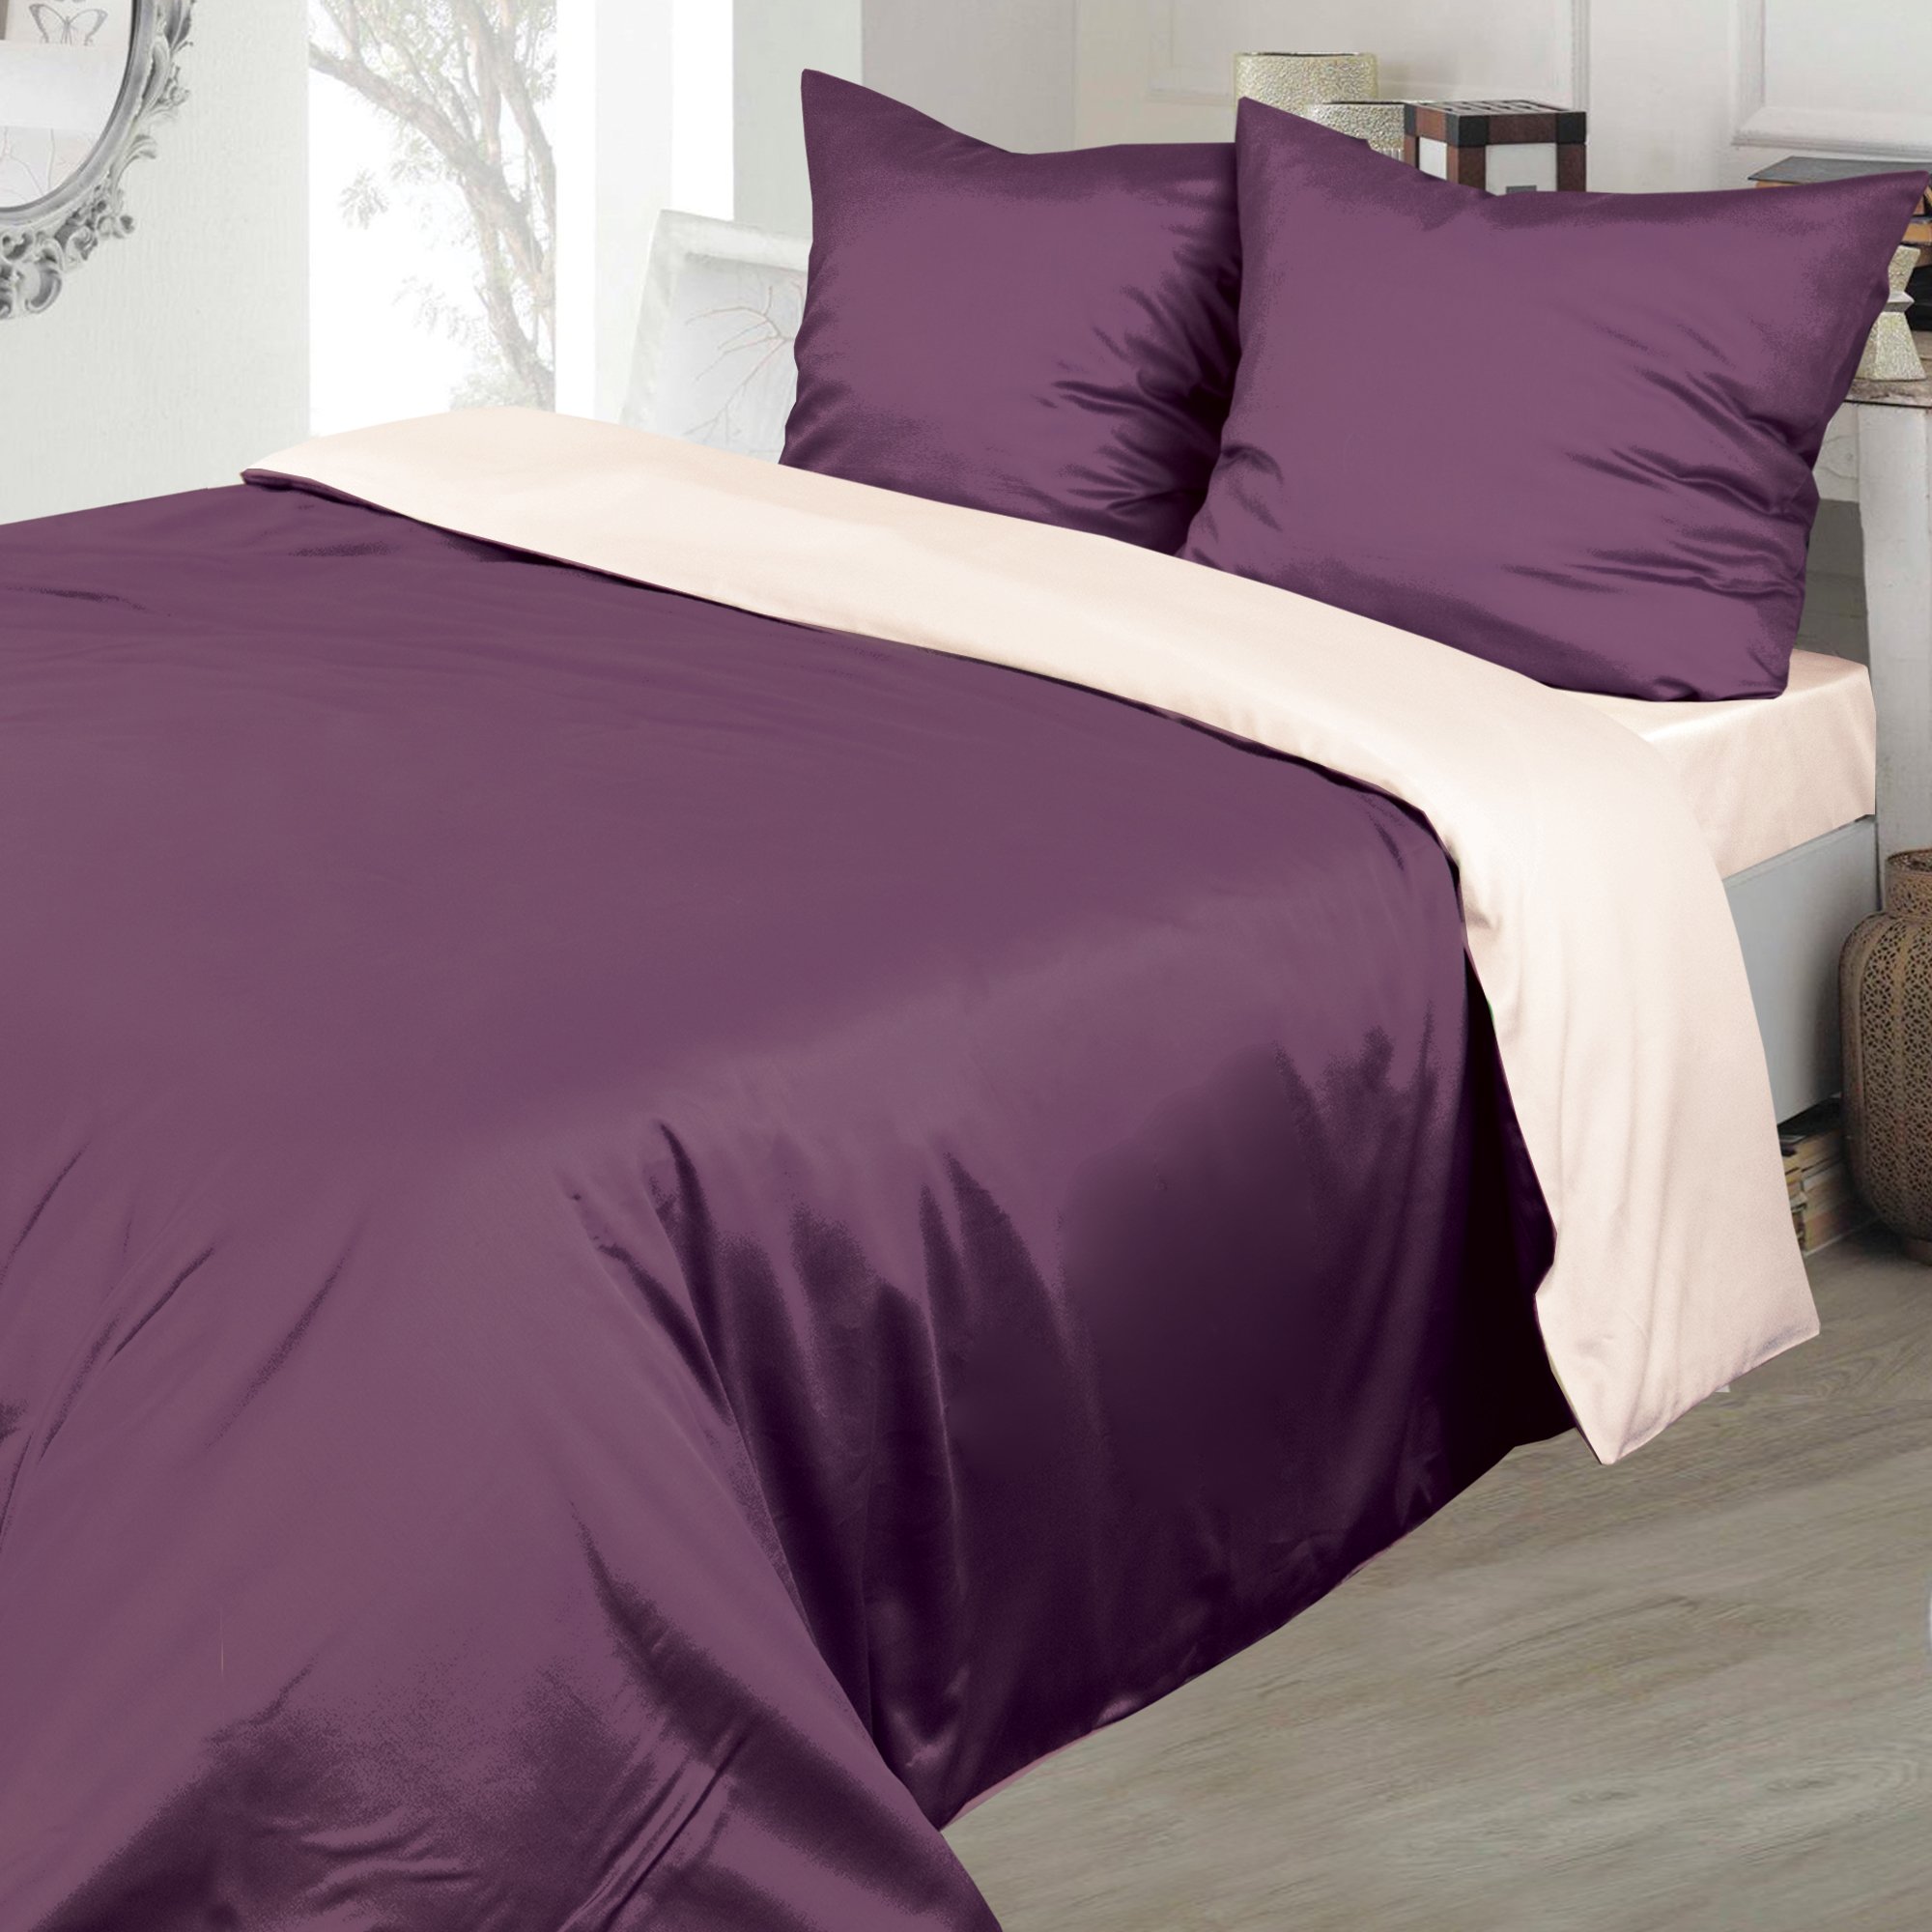 Комплект постельного белья Ярослав, евростандарт+, сатин, фиолетовый (41699_s06) - фото 1